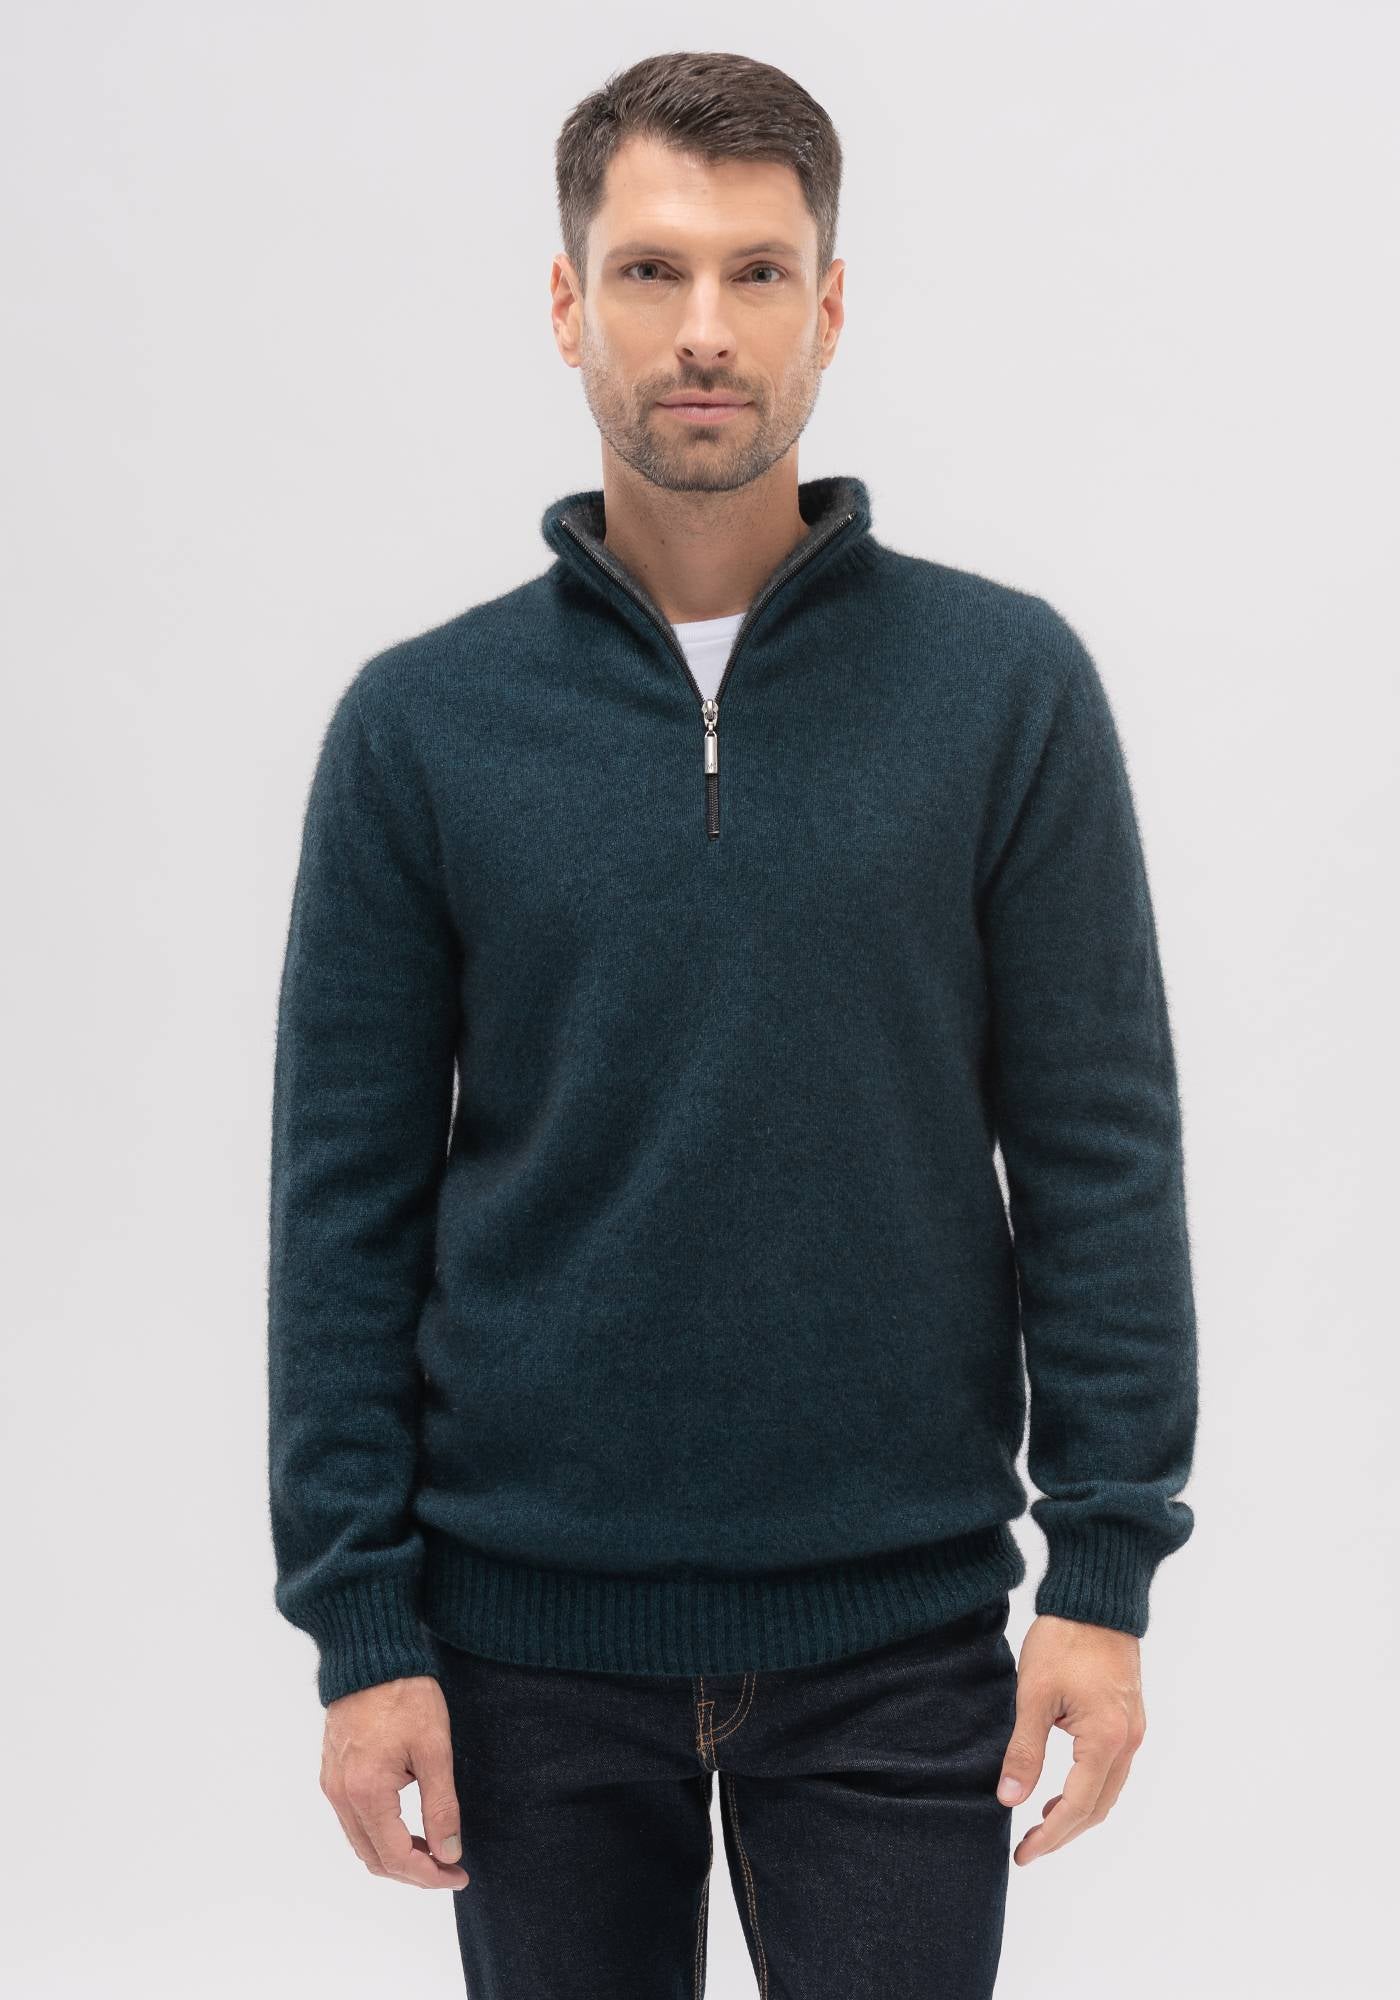 Merino Mink Contrast Half Zip Sweater